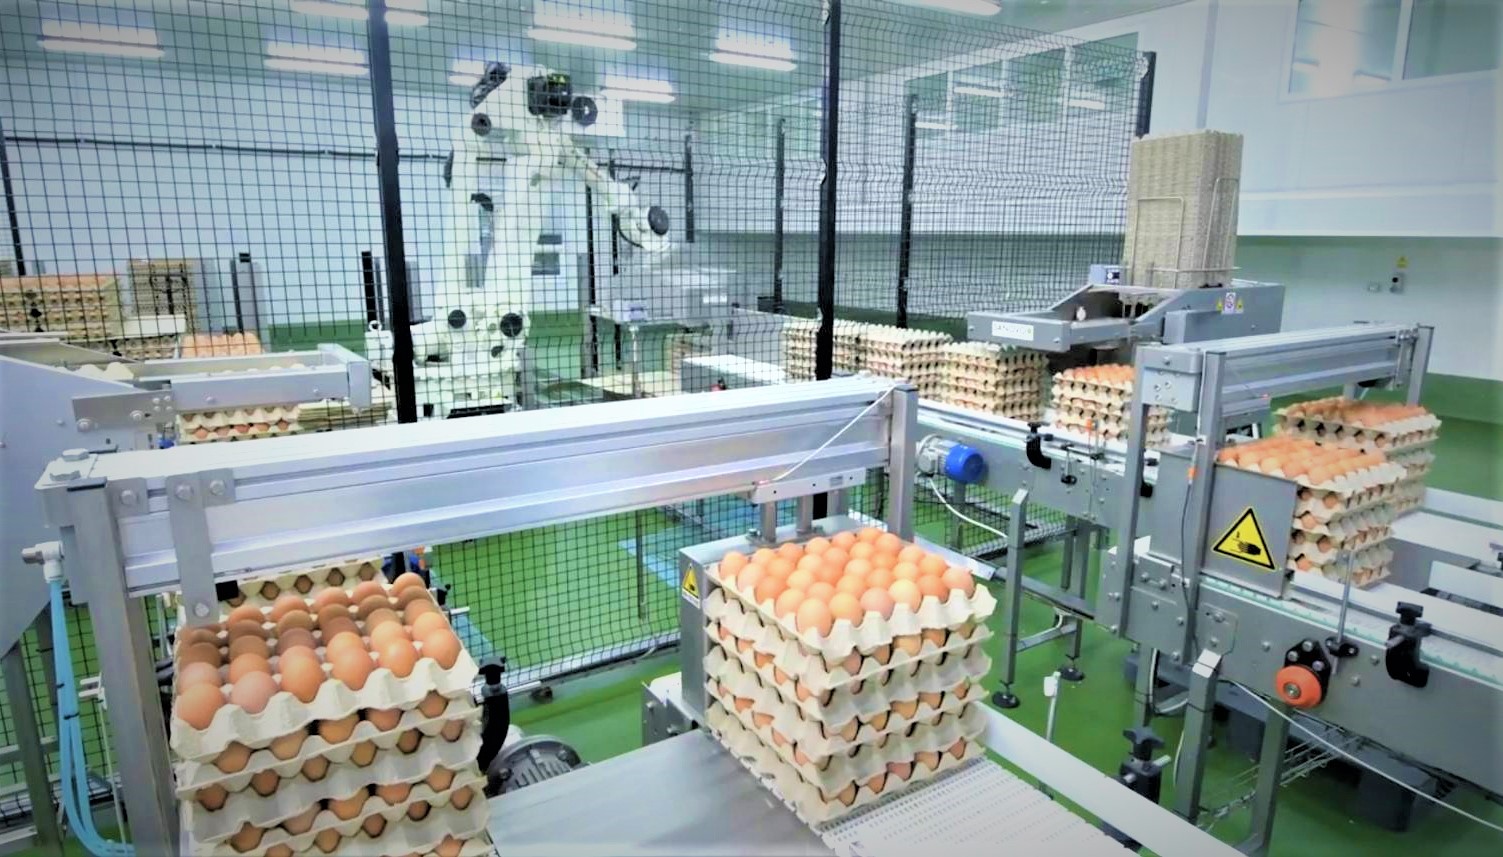 CPF หนุน 7 คอมเพล็กซ์ไก่ไข่ ใช้หลักเศรษฐกิจหมุนเวียน ลดของเสียในกระบวนการผลิต บริหารทรัพยากรคุ้มค่า